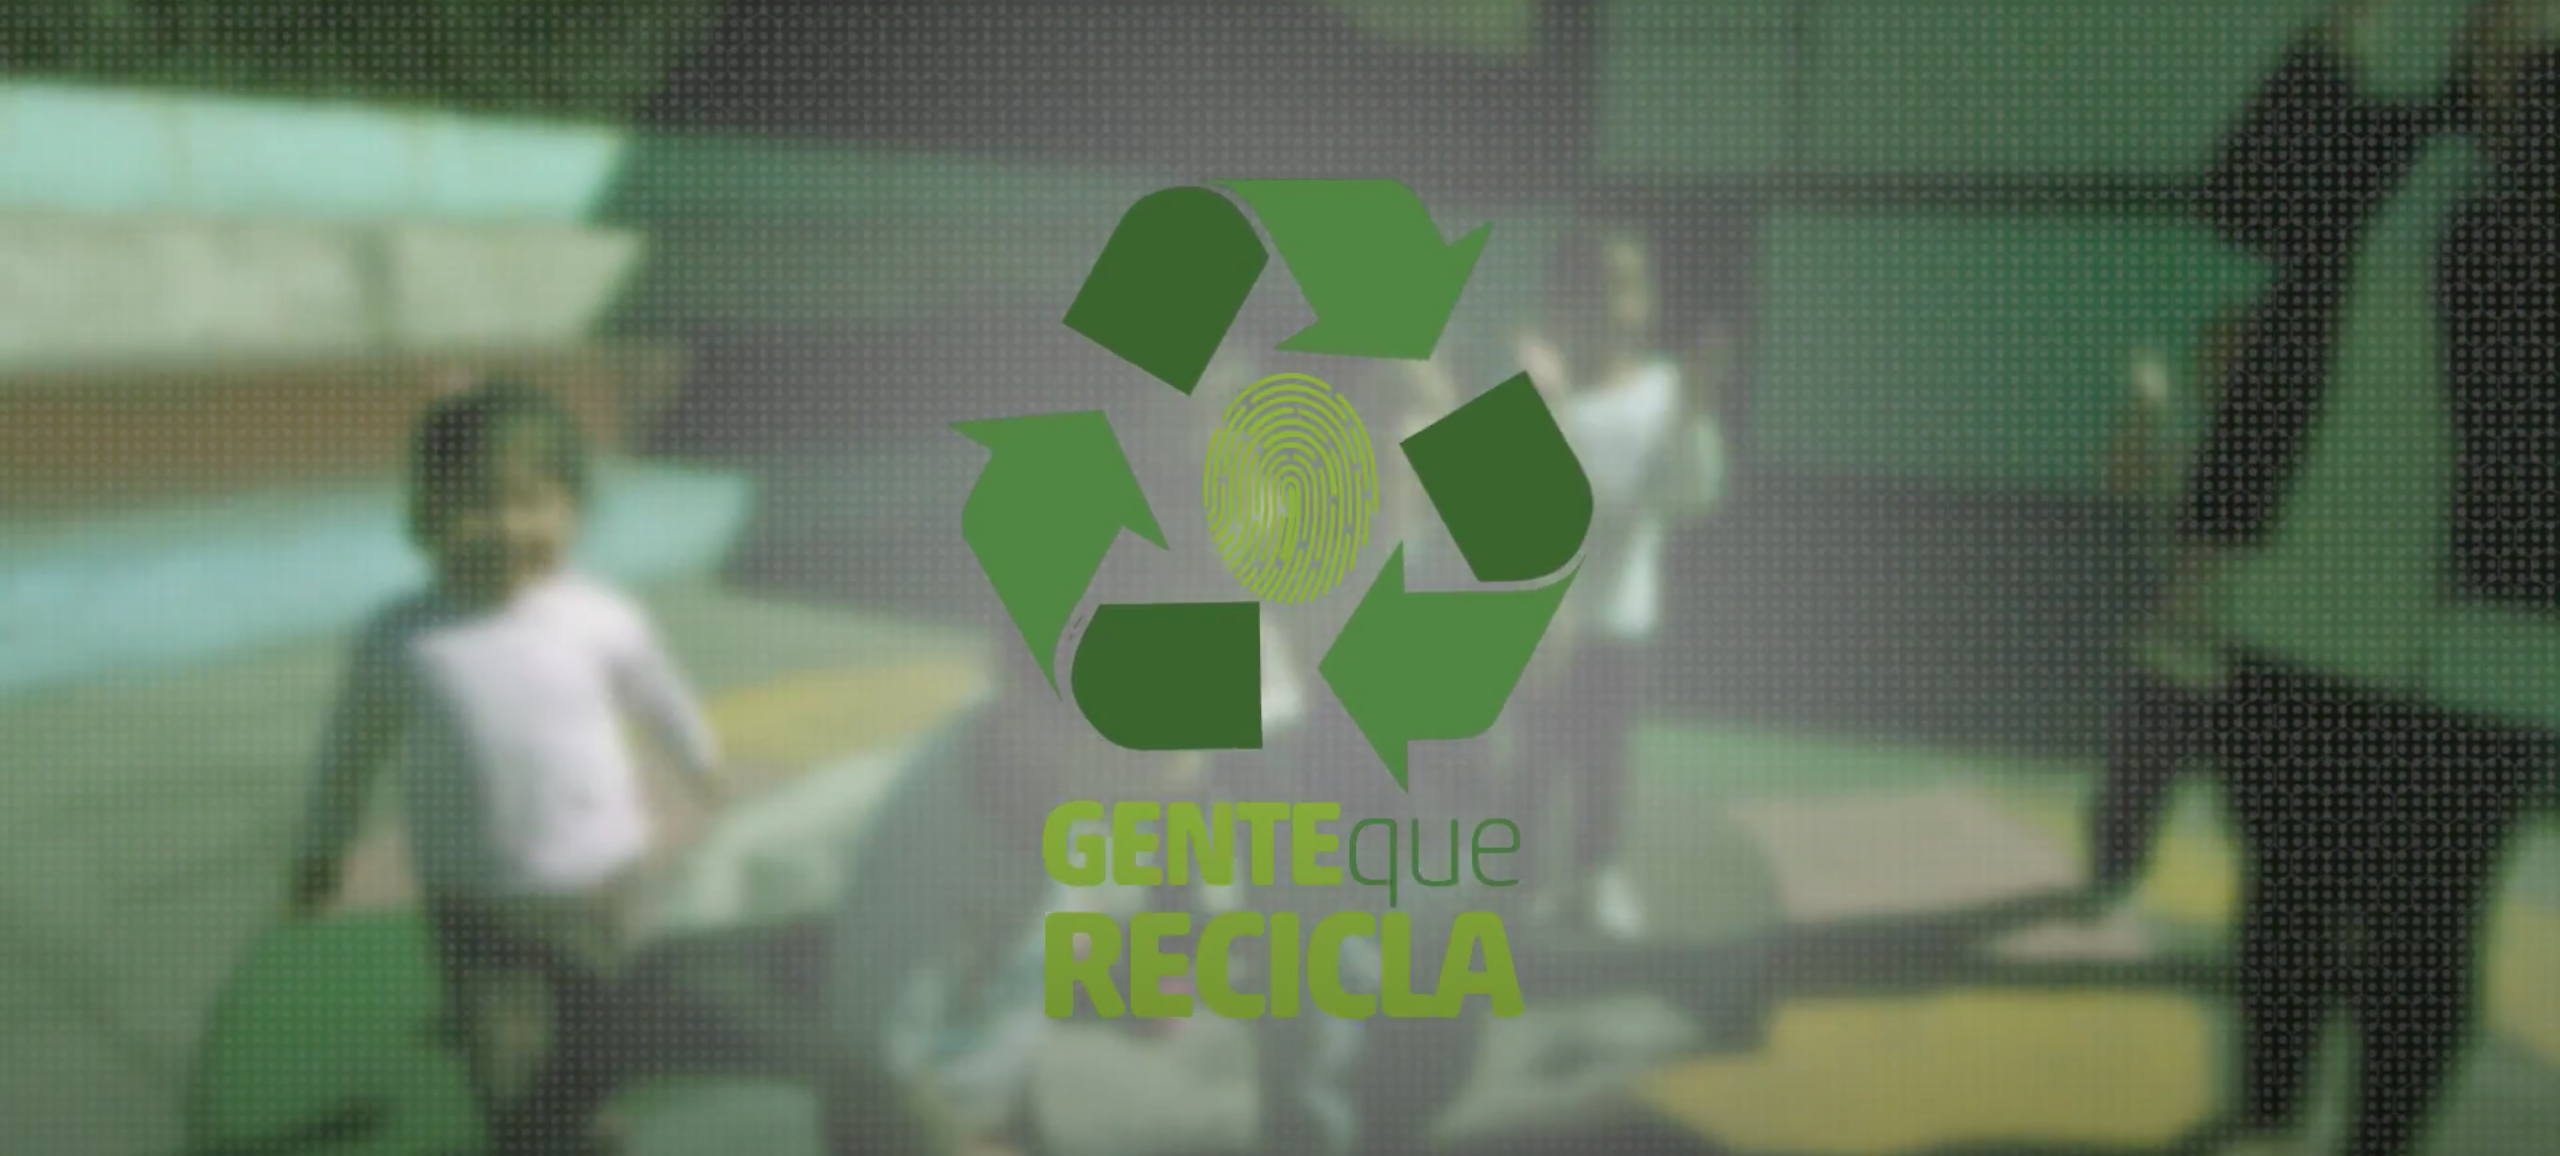 Tetra Pak Brasil lança série sobre reciclagem.